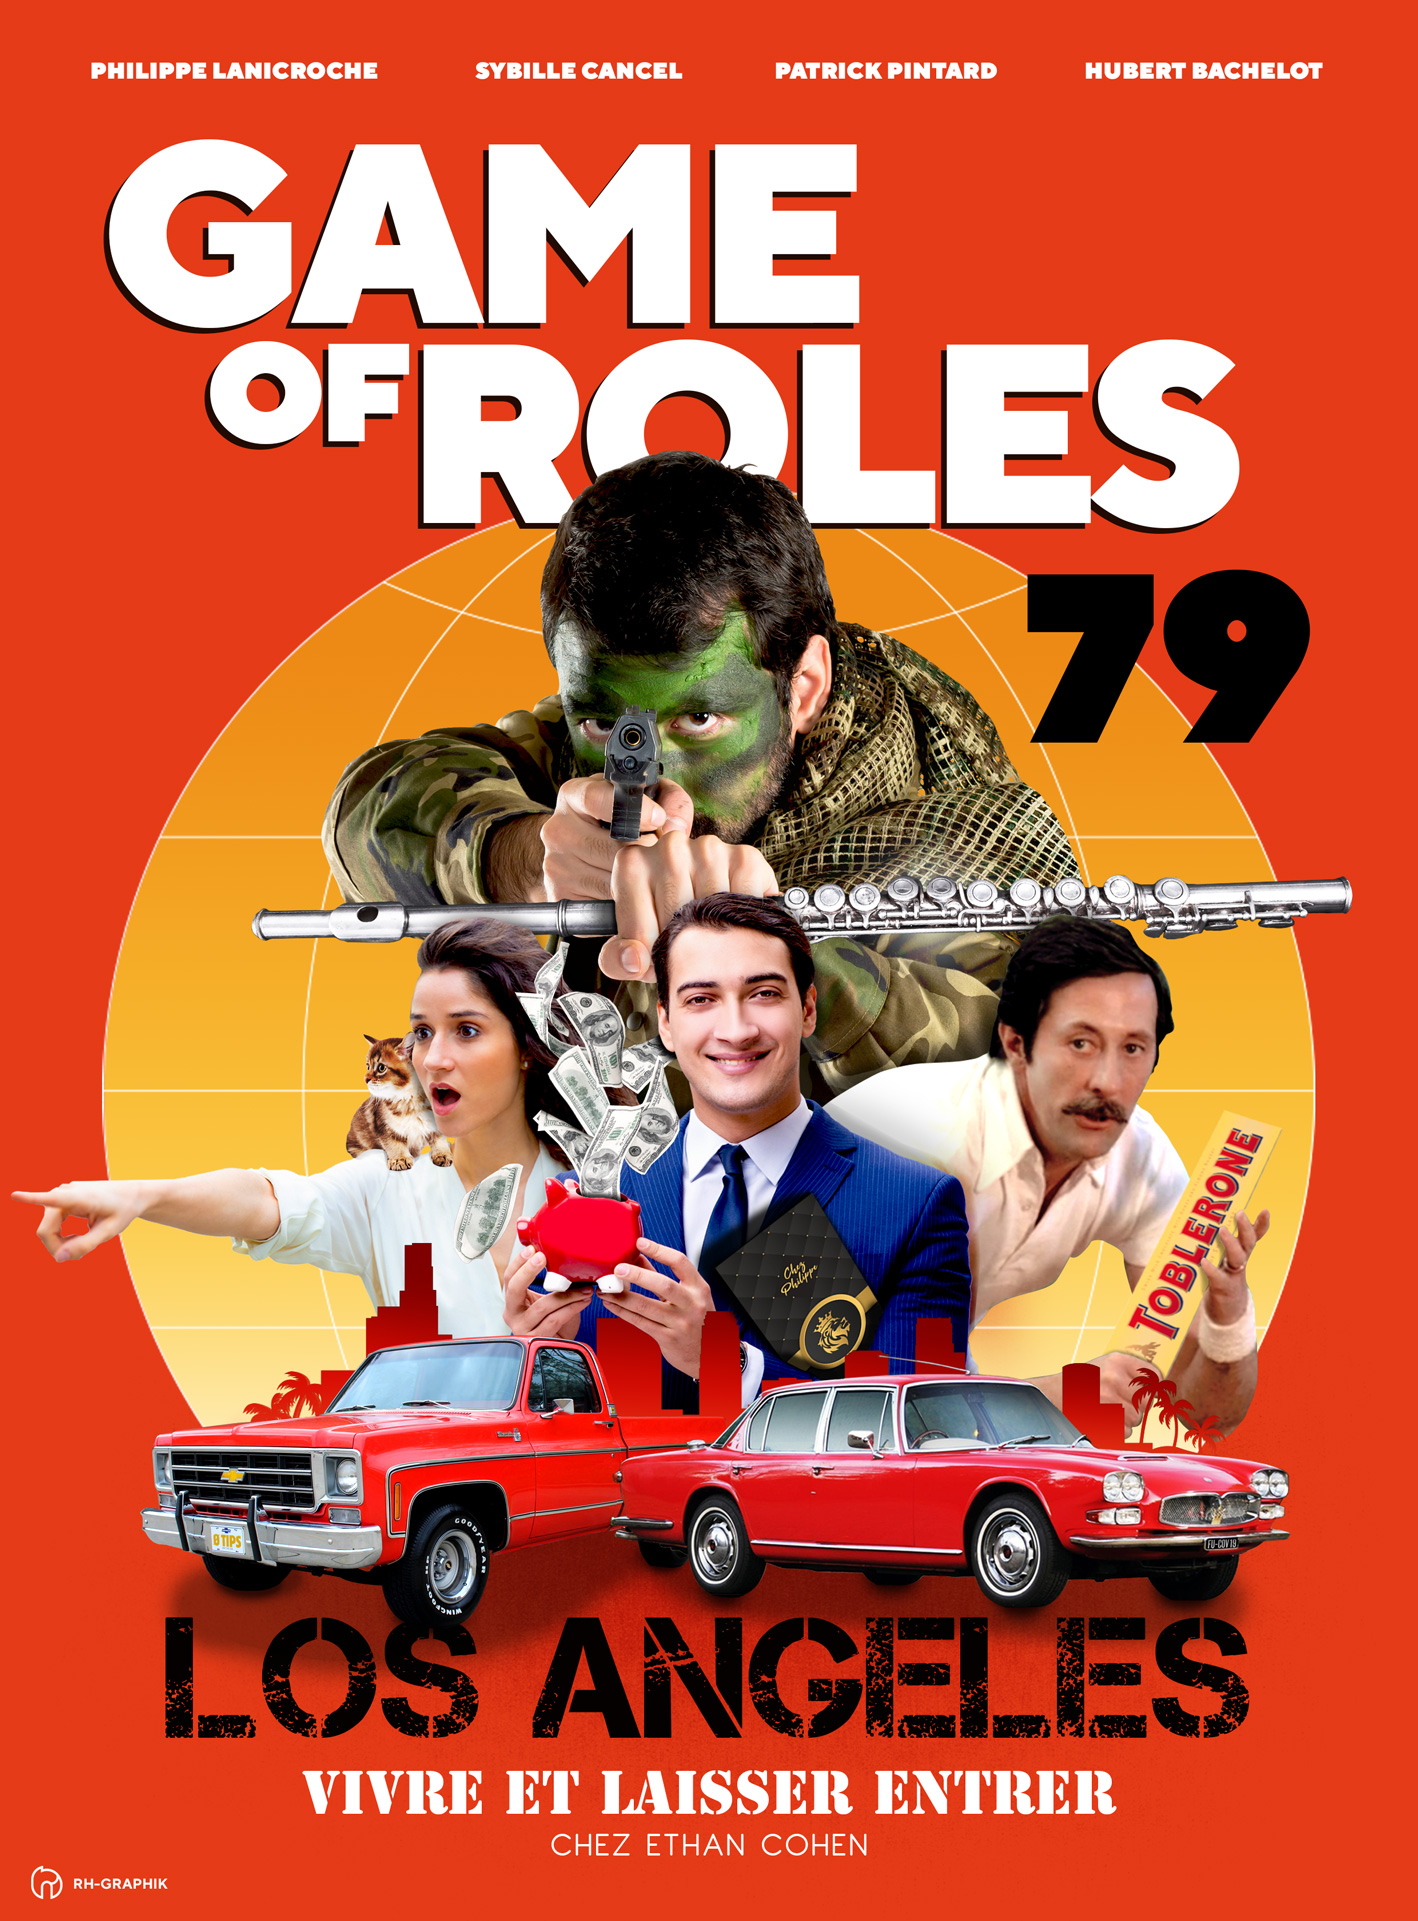 Visuel affiche pour game of roles 1979